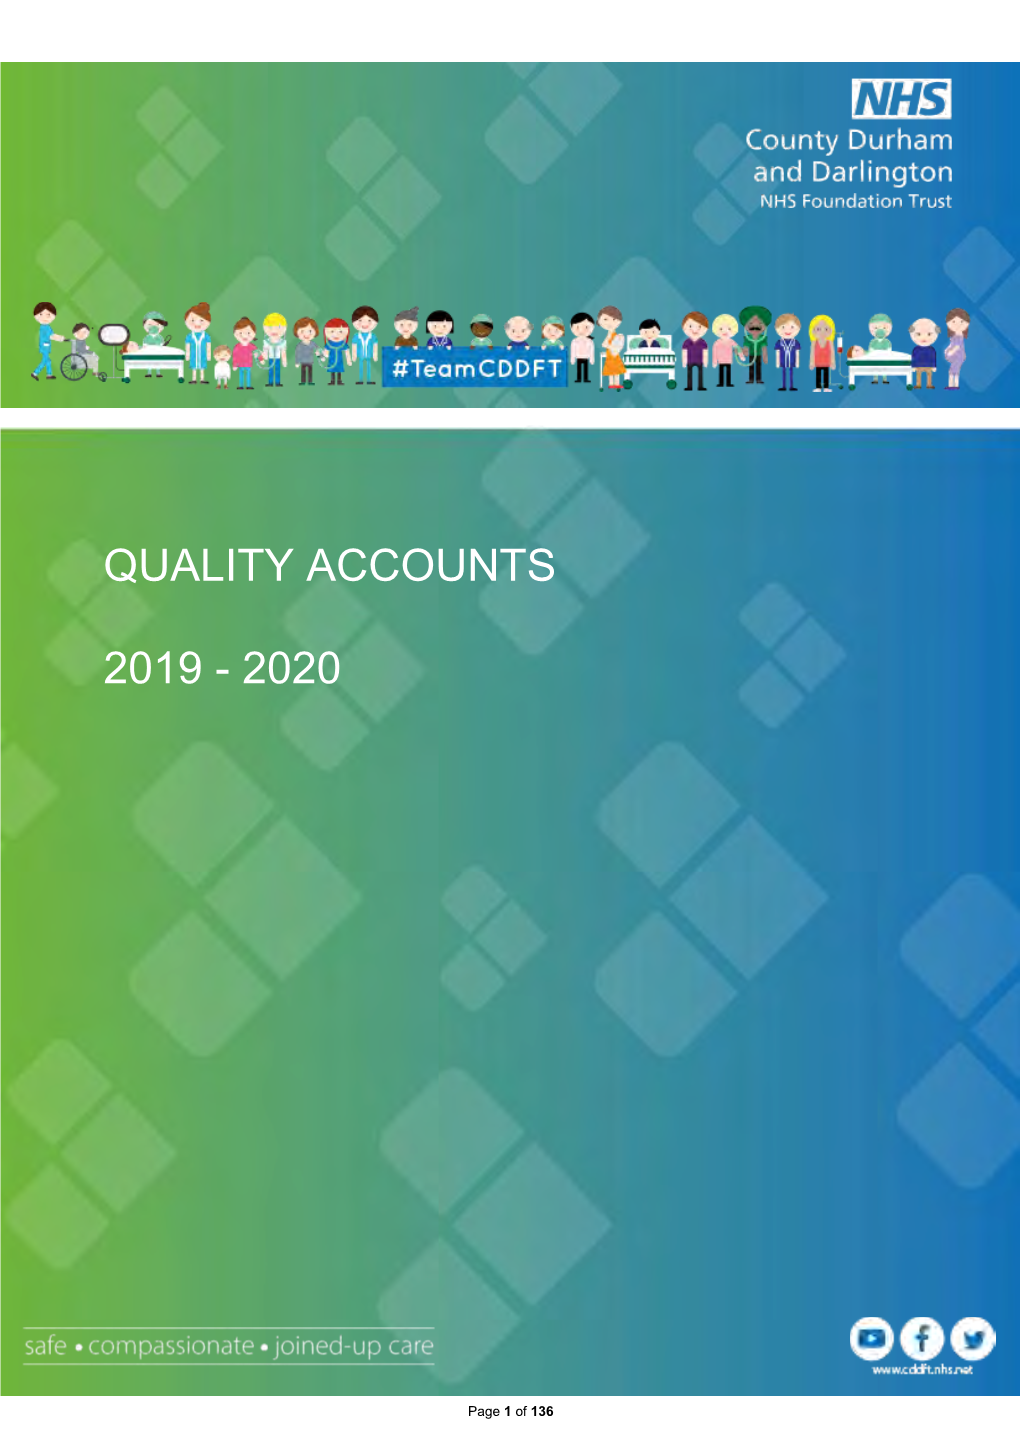 Quality Accounts 2019/2020